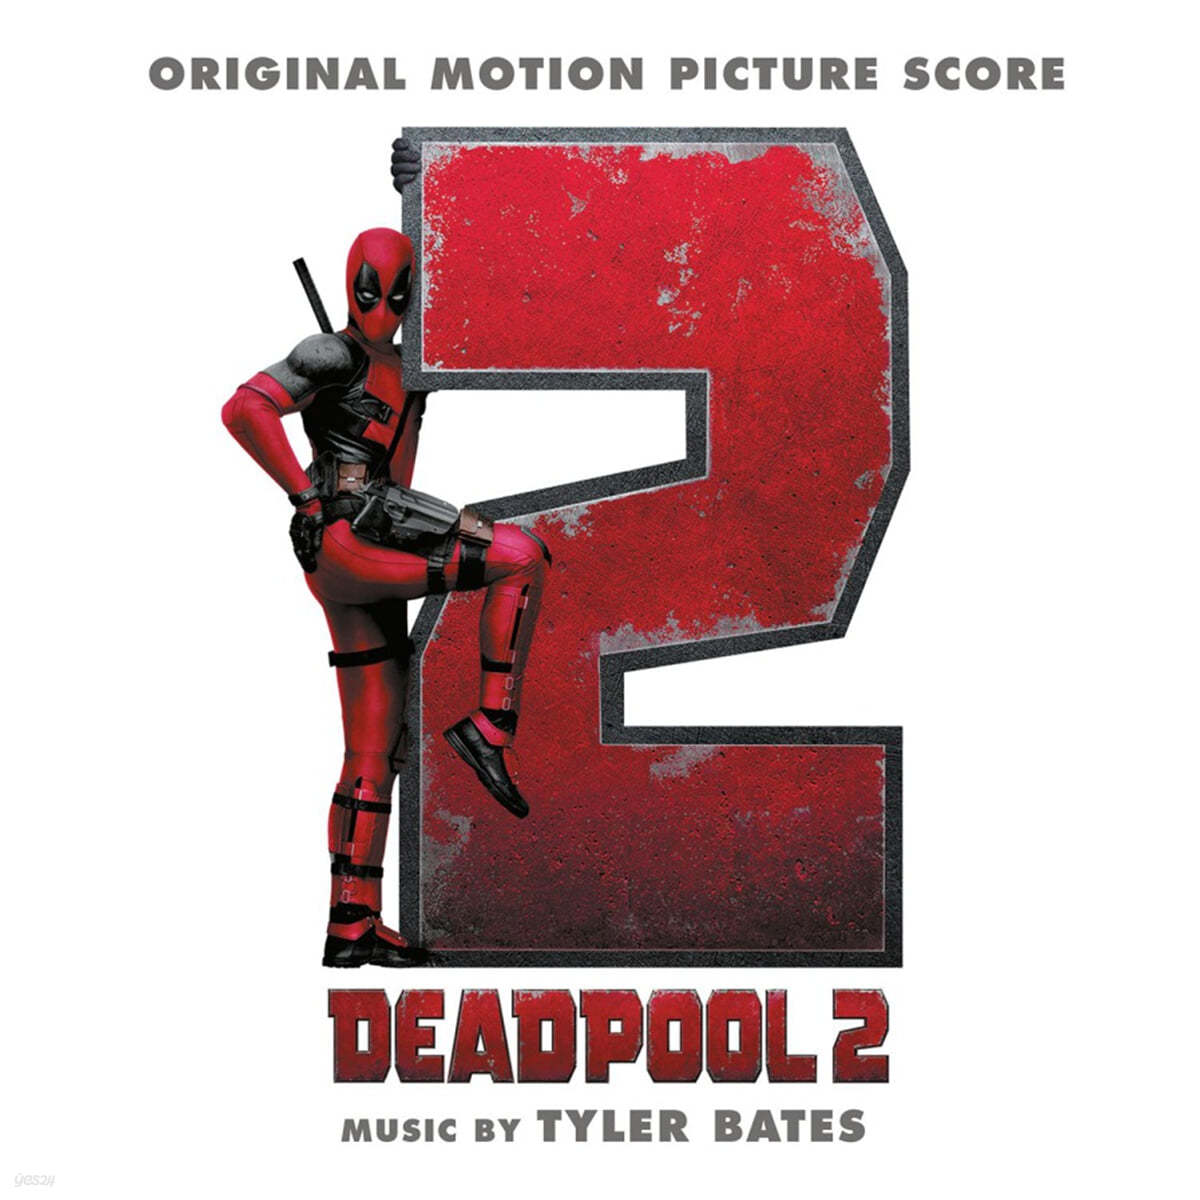 데드풀 2 영화음악 (Deadpool 2 OST by Tyler Bates) [핑크 컬러 LP]